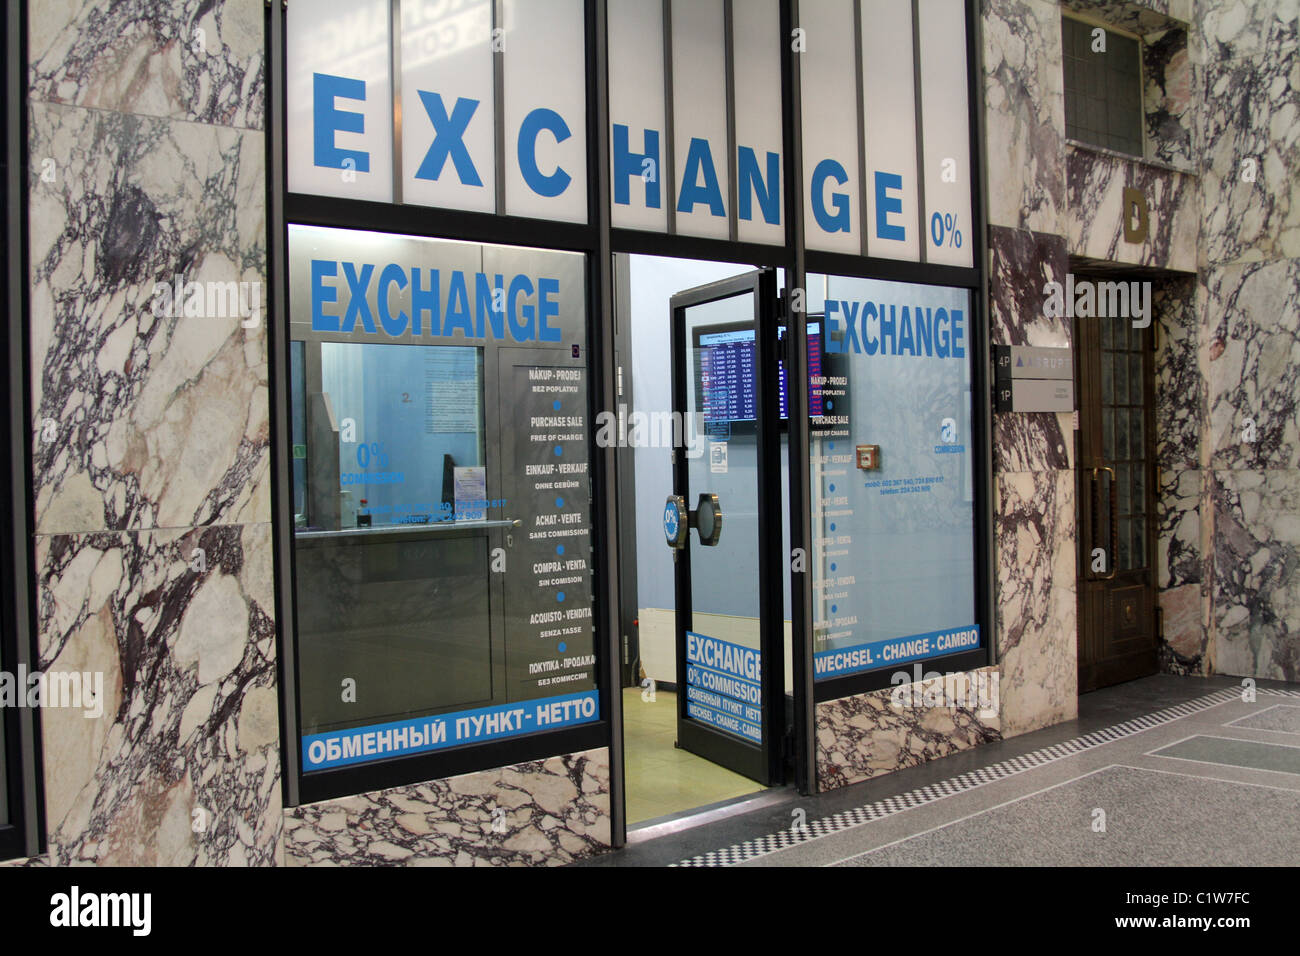 Bureau de Change 0% commission money exchange shop in Prague, Czech Republic Stock Photo